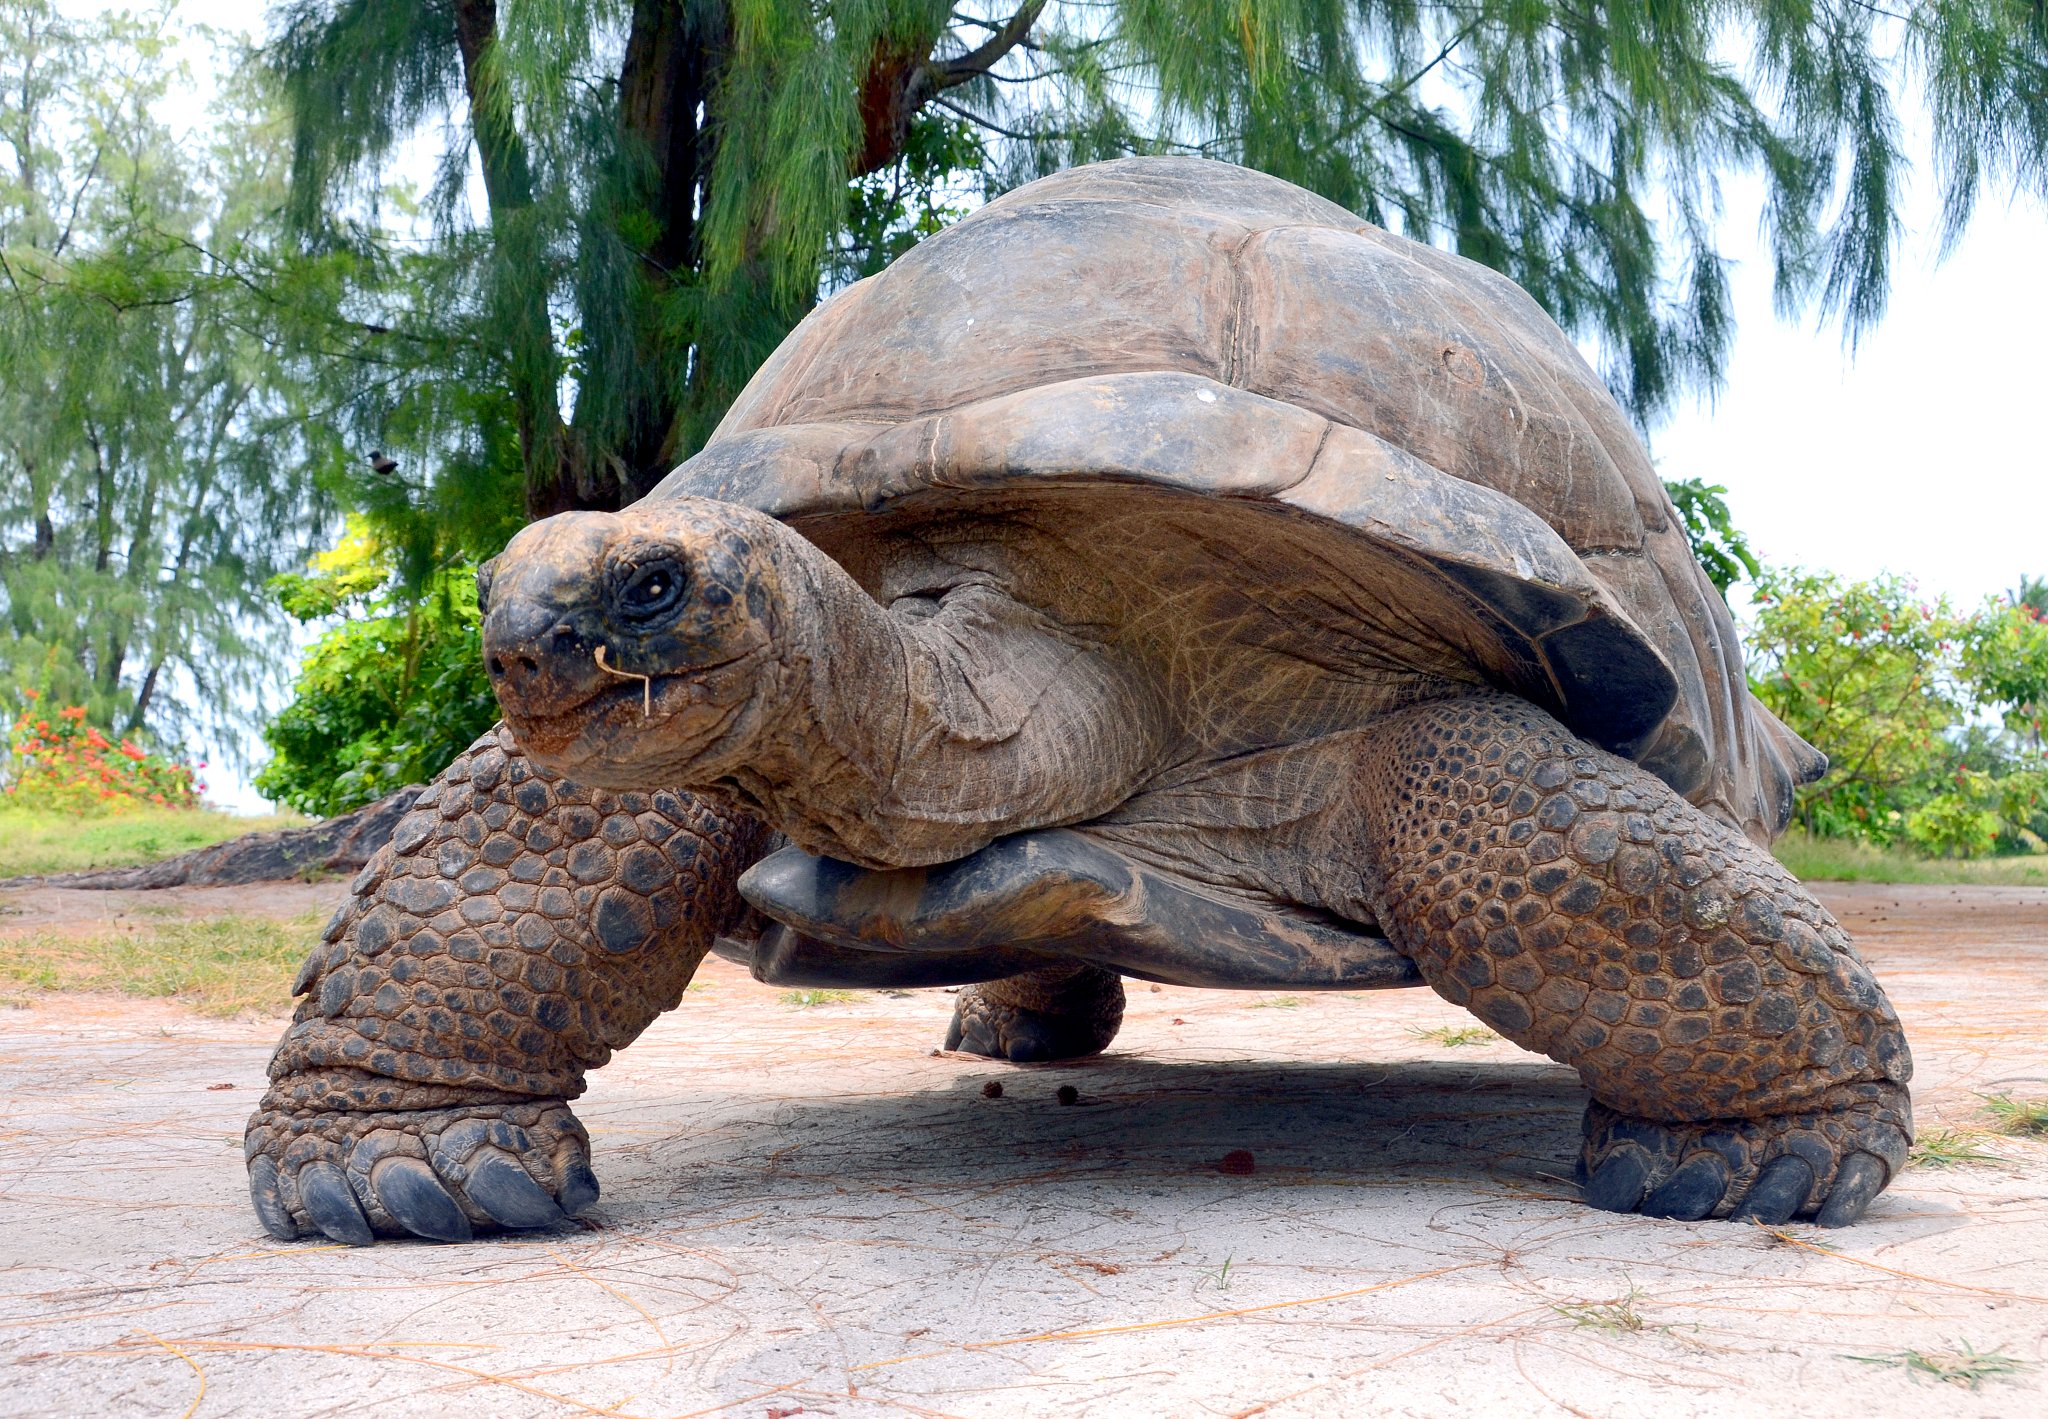 Большая галапагосская черепаха. Исполинская сейшельская черепаха. Галапагосская черепаха. Галапагосская гигантская черепаха. Гигантская черепаха Альдабра.